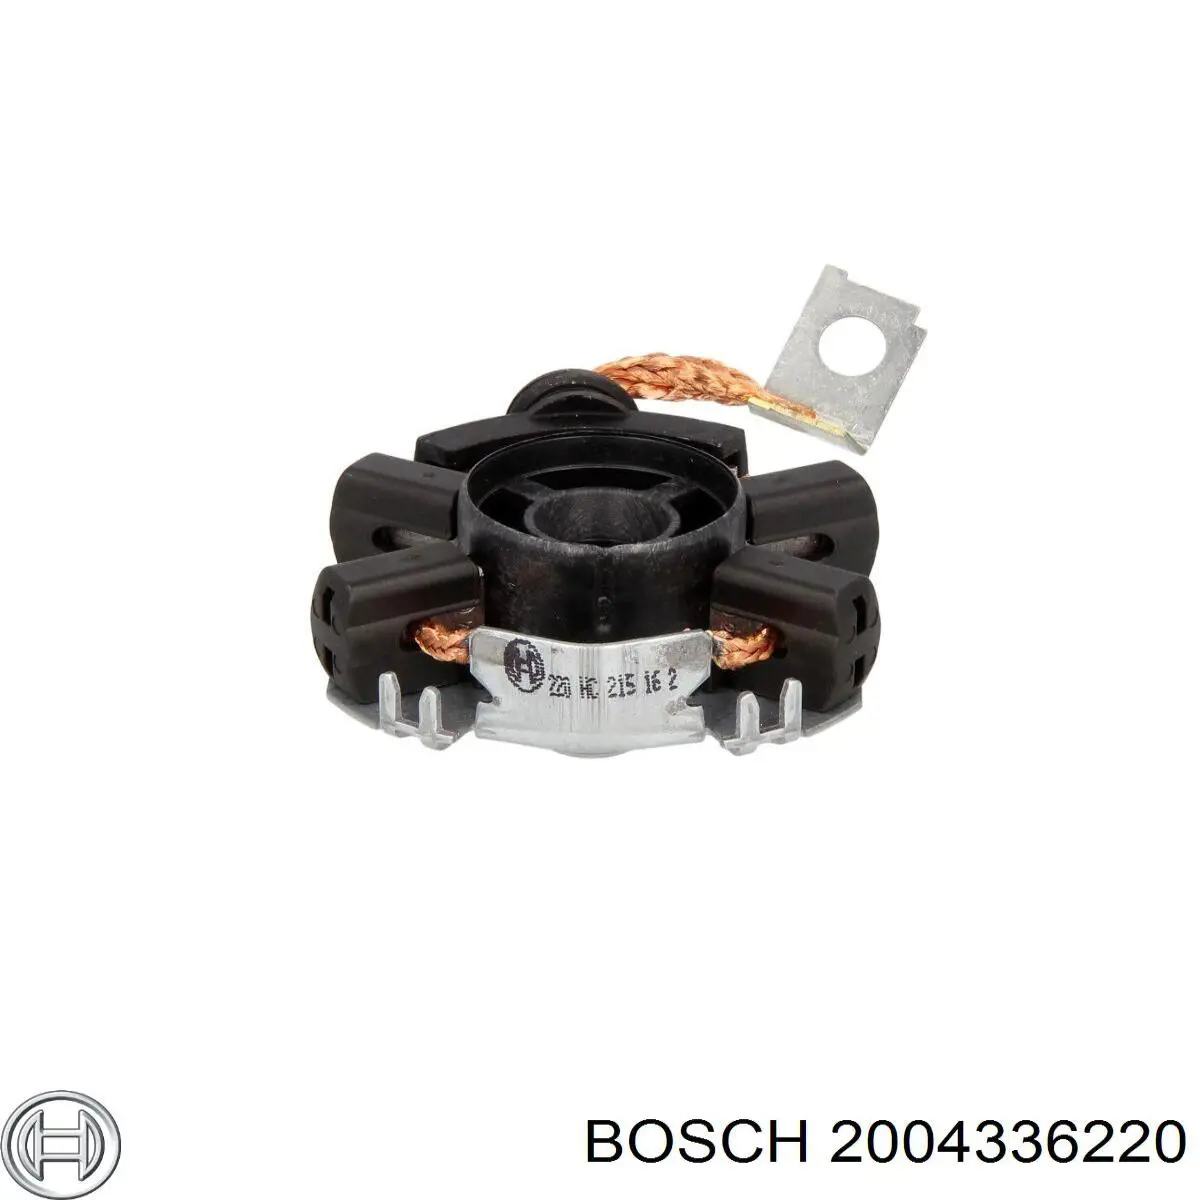 2004336220 Bosch щеткодеpжатель стартера